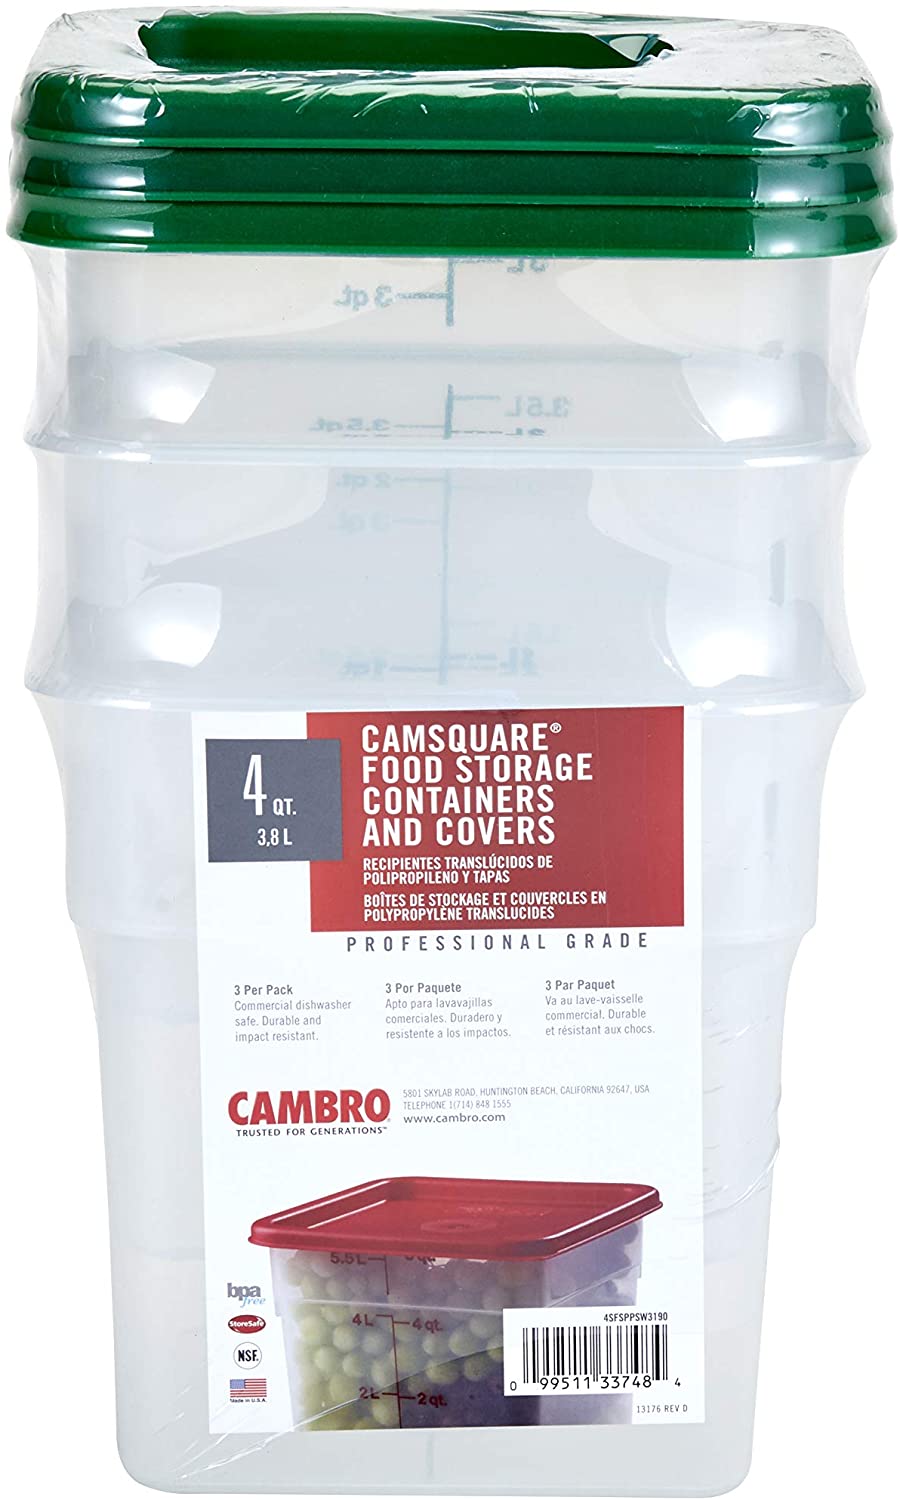 Cambro 12 Qt Translucent Square Food Storage Container